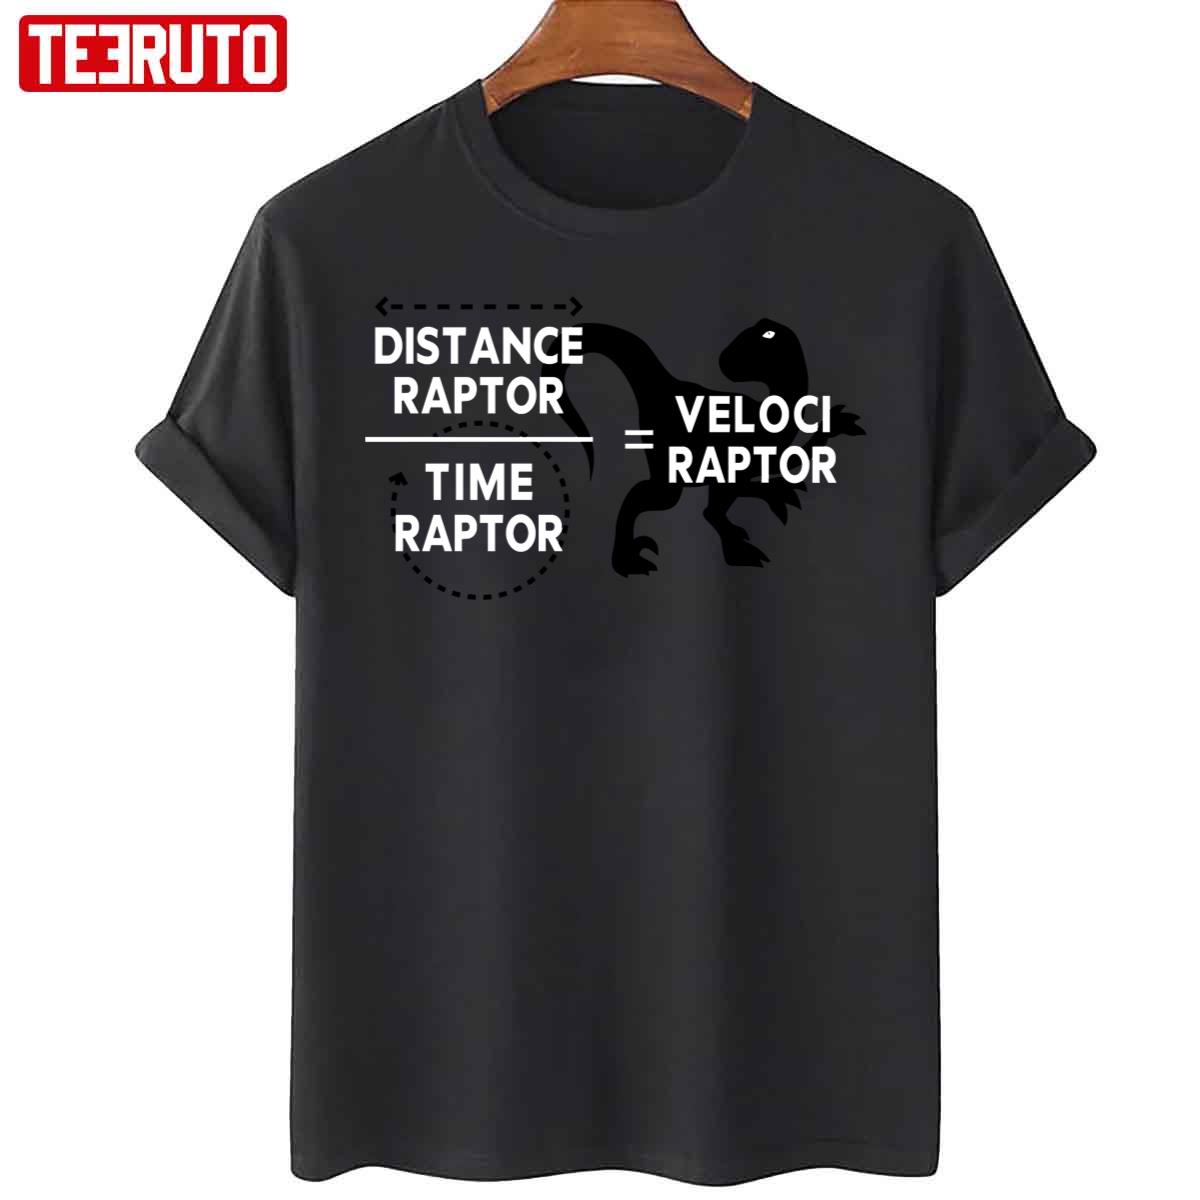 Distance Raptor Over Time Raptor Equals Velociraptor Unisex T-Shirt